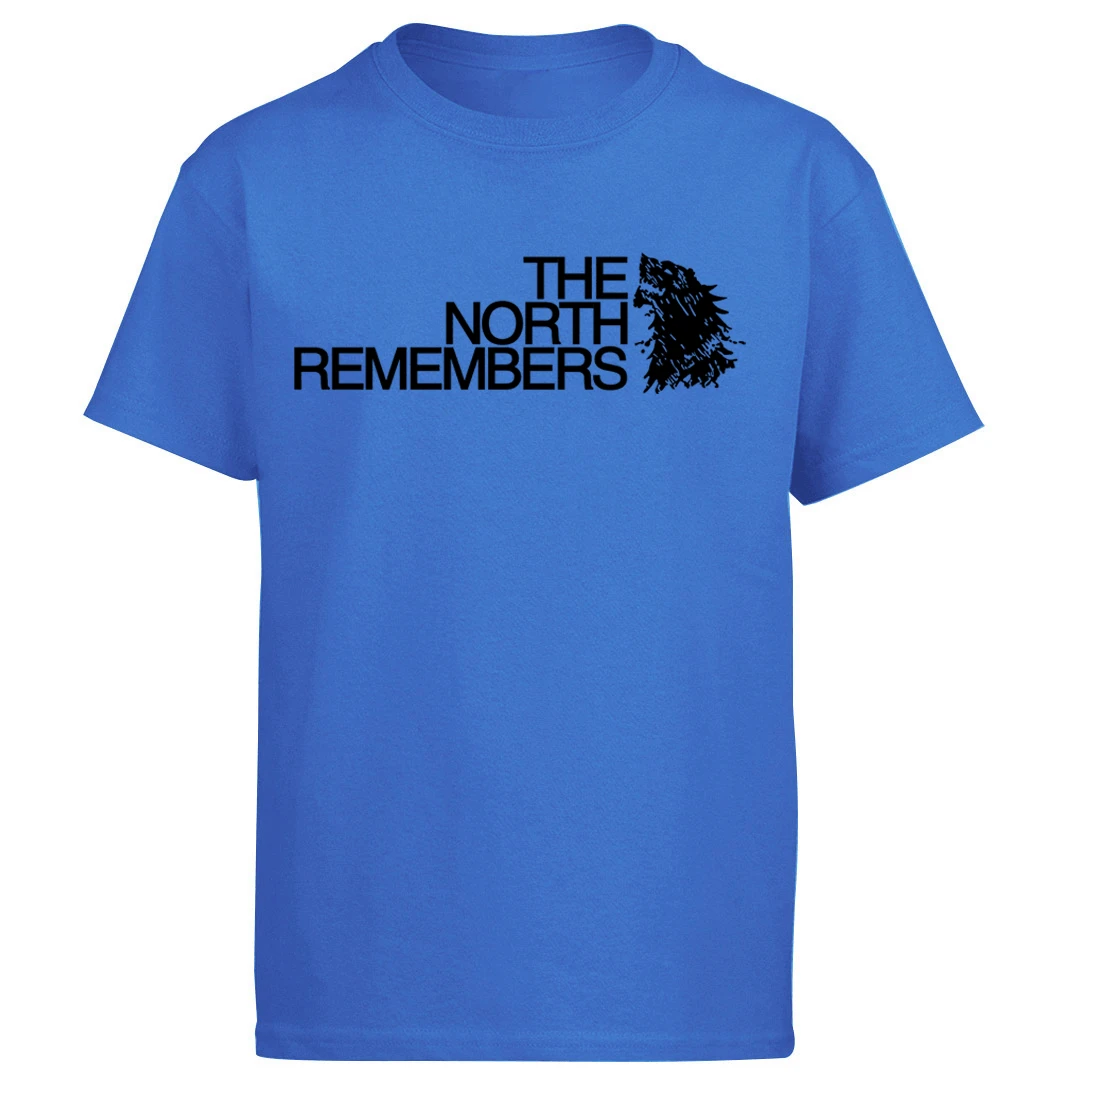 Игра престолов Старк Волк Футболка Мужская Уличная Северный помнит футболка Лето короткий рукав топы хлопок брендовая футболка - Цвет: Blue 1